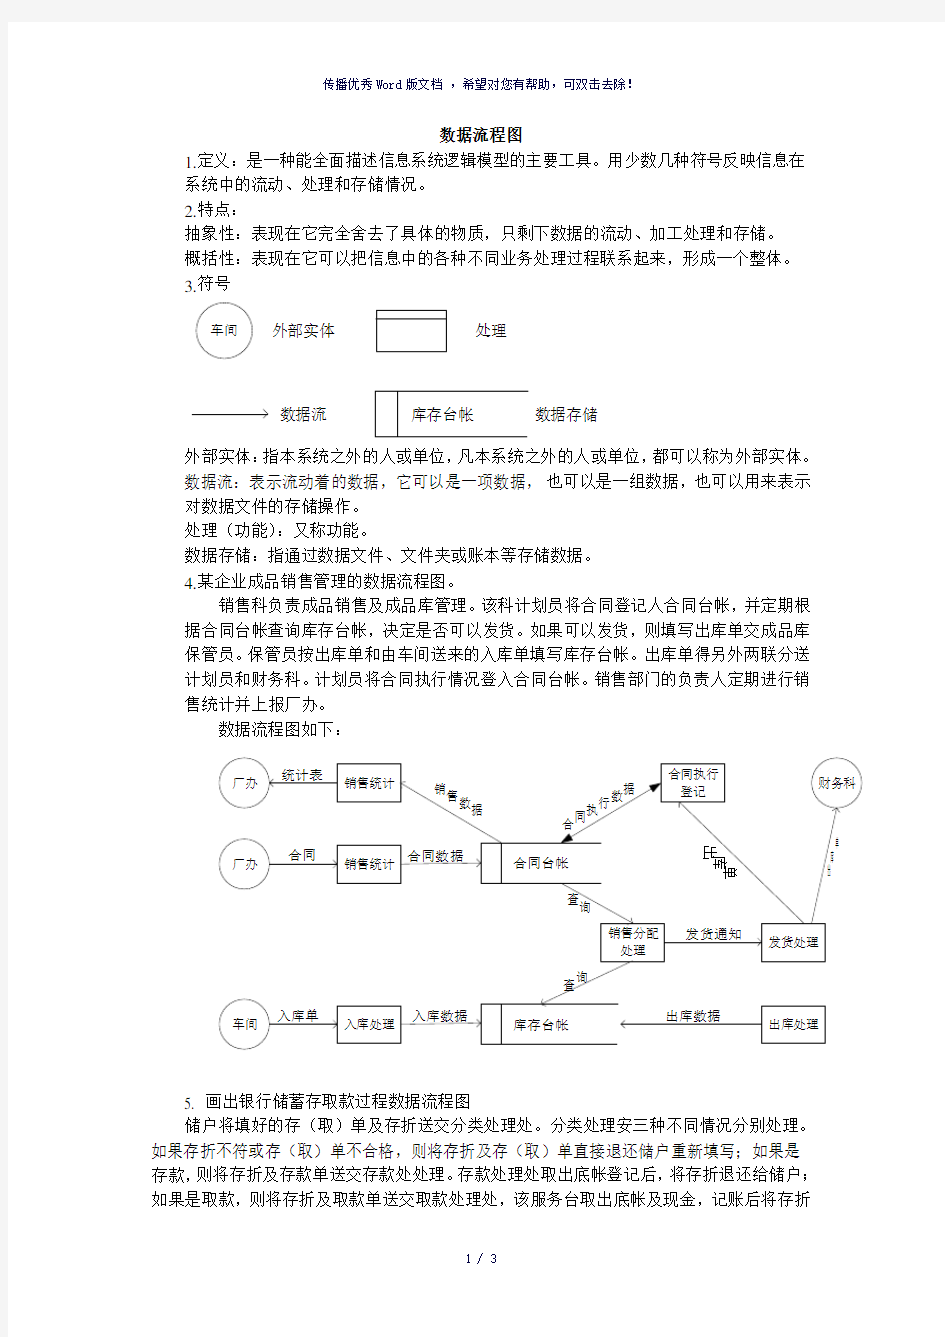 管理信息系统第六章系统分析-数据流程图的画法(参考模板)